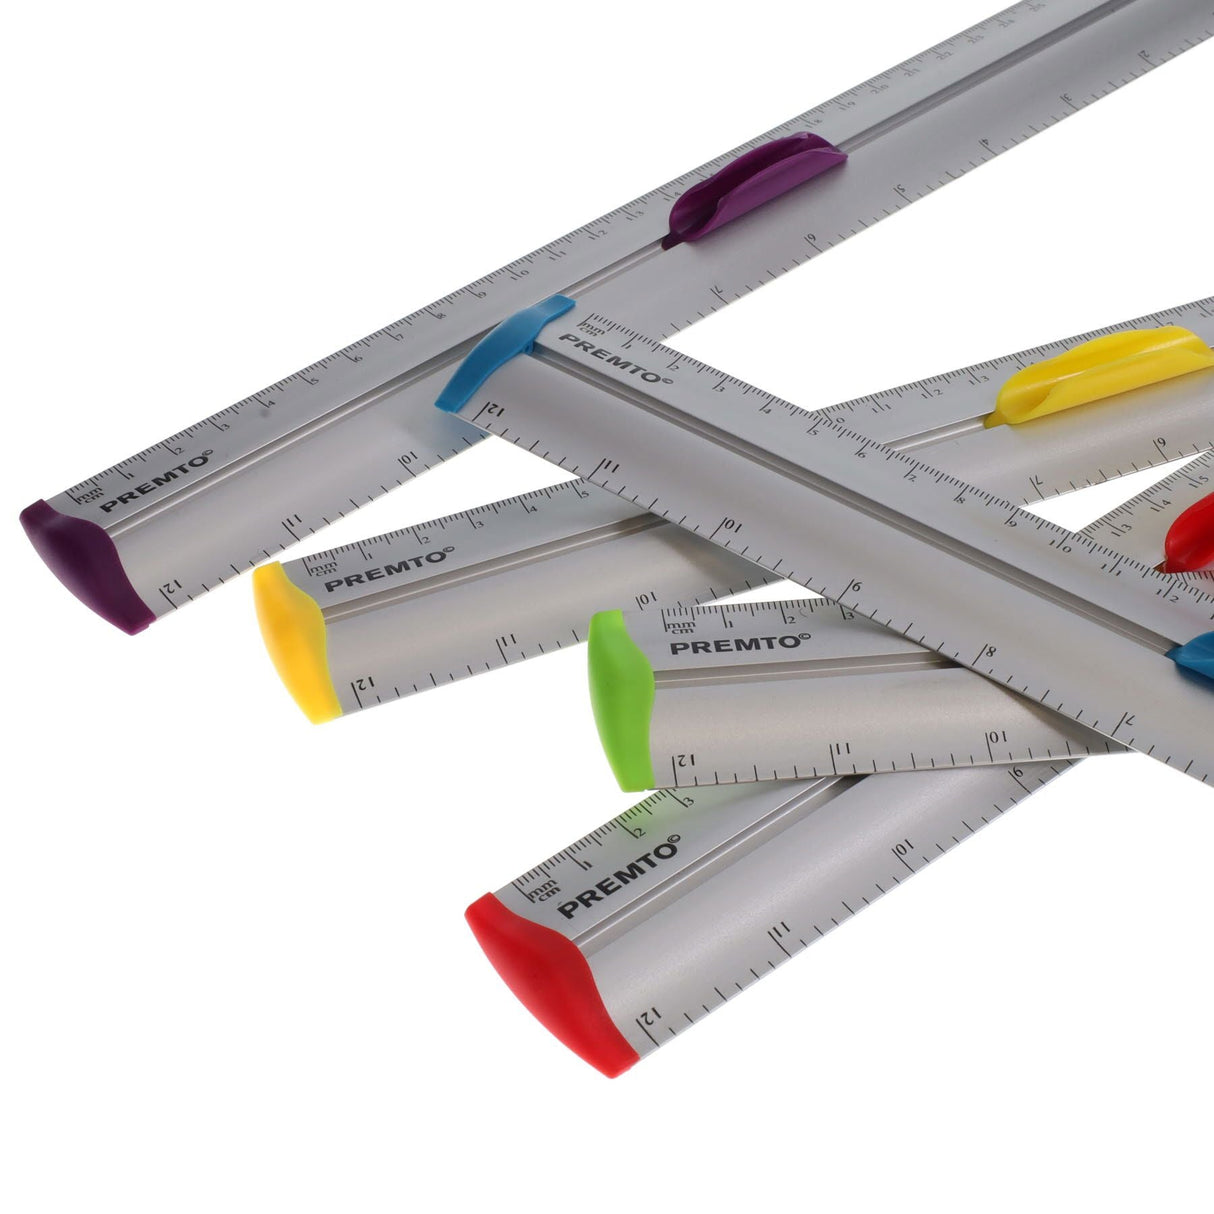 Premto S1 Aluminum Ruler With Grip 30cm - Printer Blue-Rulers-Premto|StationeryShop.co.uk